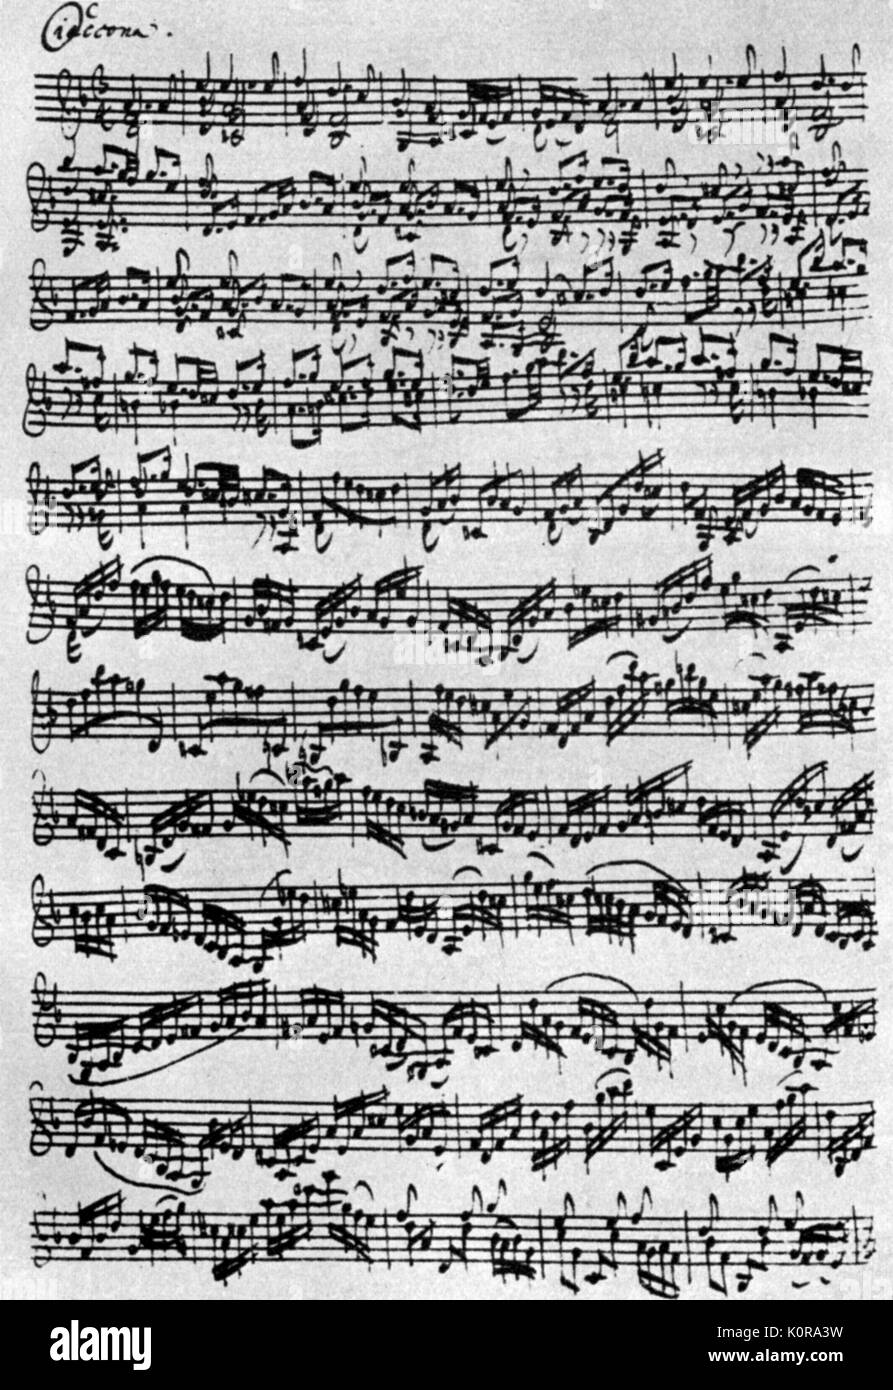 Johann Sebastian Bach - ciaccona / ciaccona per violino solo in D-minore  partita. Compositore tedesco e organista. 1685-1750 Foto stock - Alamy